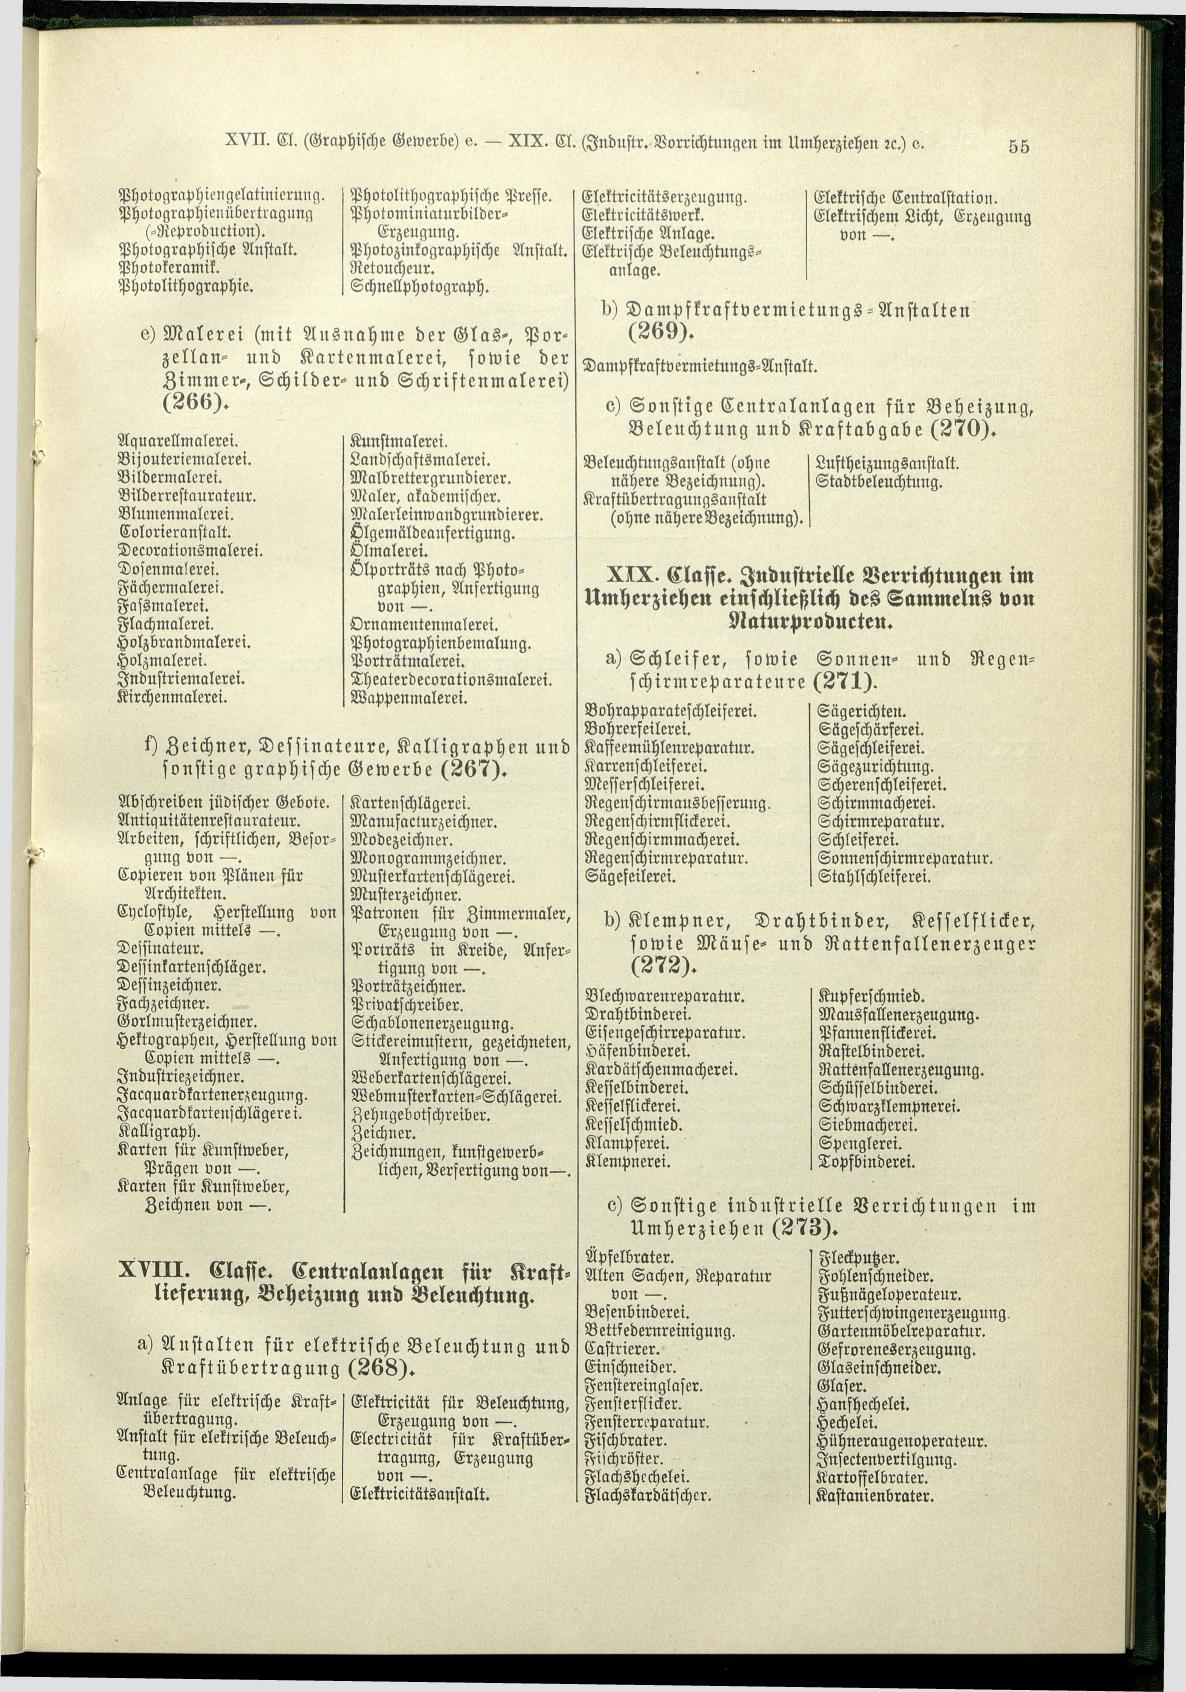 Verzeichnis der Gewerbe der im Reichsrathe vertretenen Königreiche und Länder 1900 - Page 59